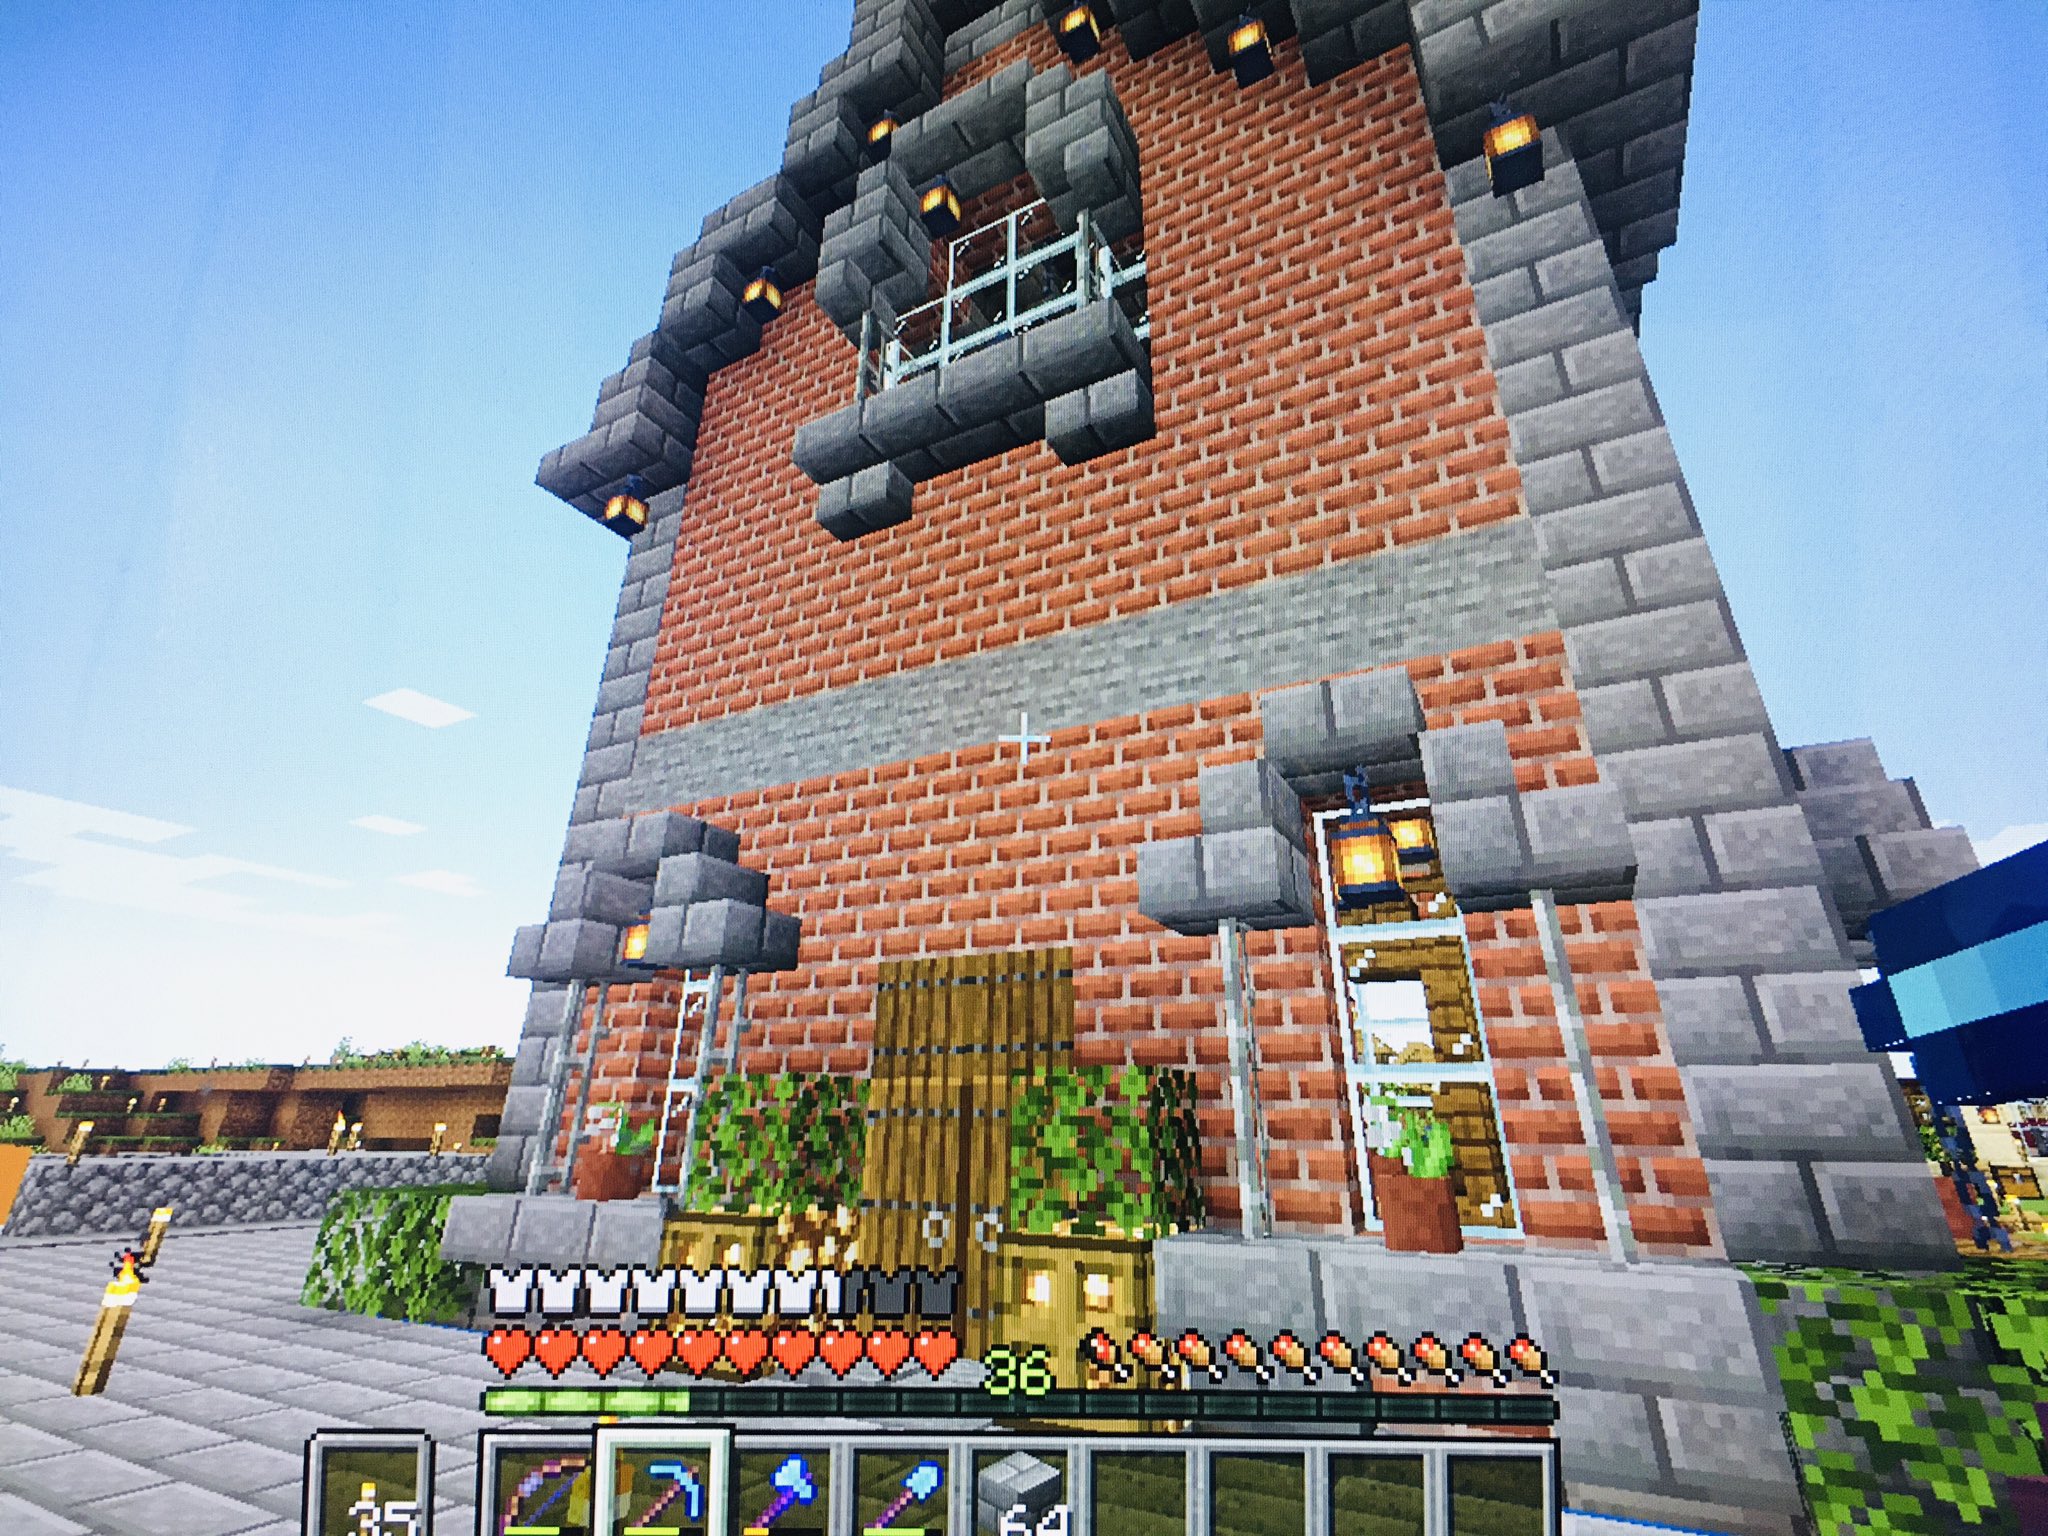 カモン謝范 レンガの家 ヨーロッパ風の街並みを作っていく予定 マイクラ Minecraft レンガの家 マイクラ建築 T Co 7xkwrtzu Twitter